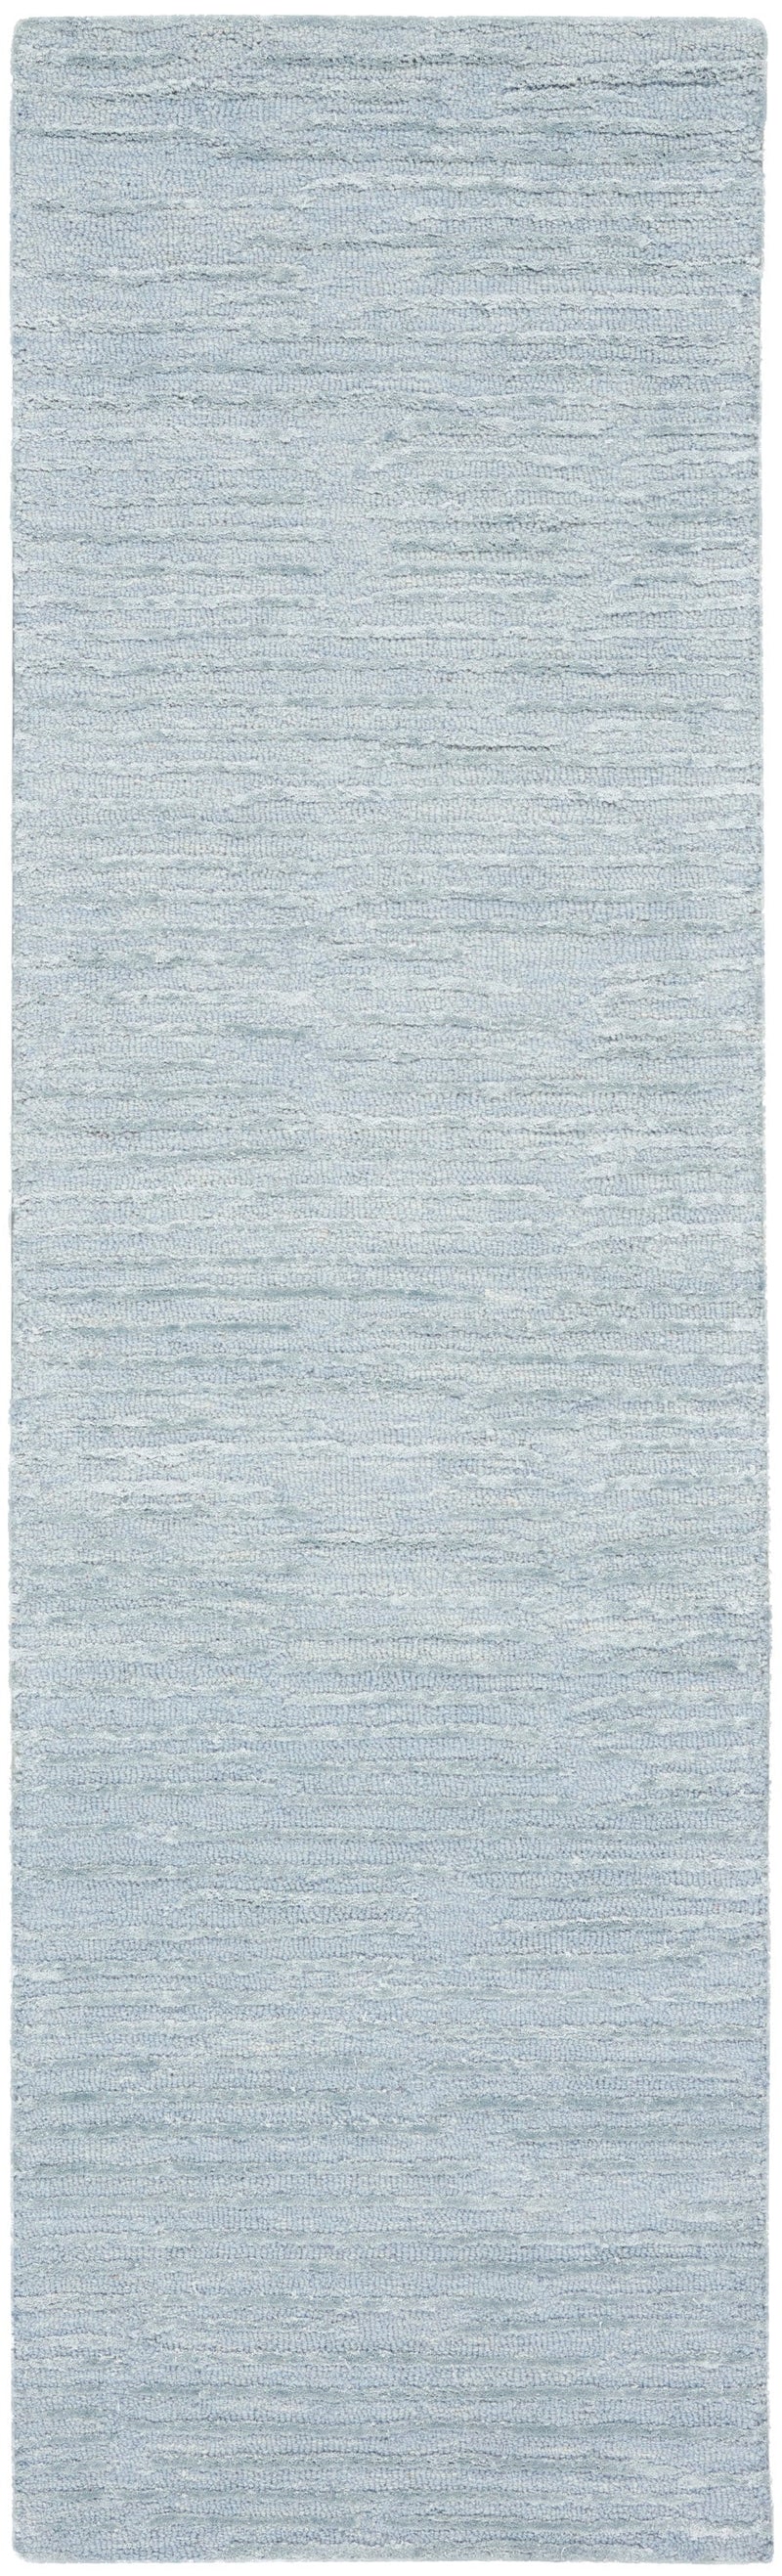 media image for ck010 linear handmade light blue rug by nourison 99446879950 redo 2 270